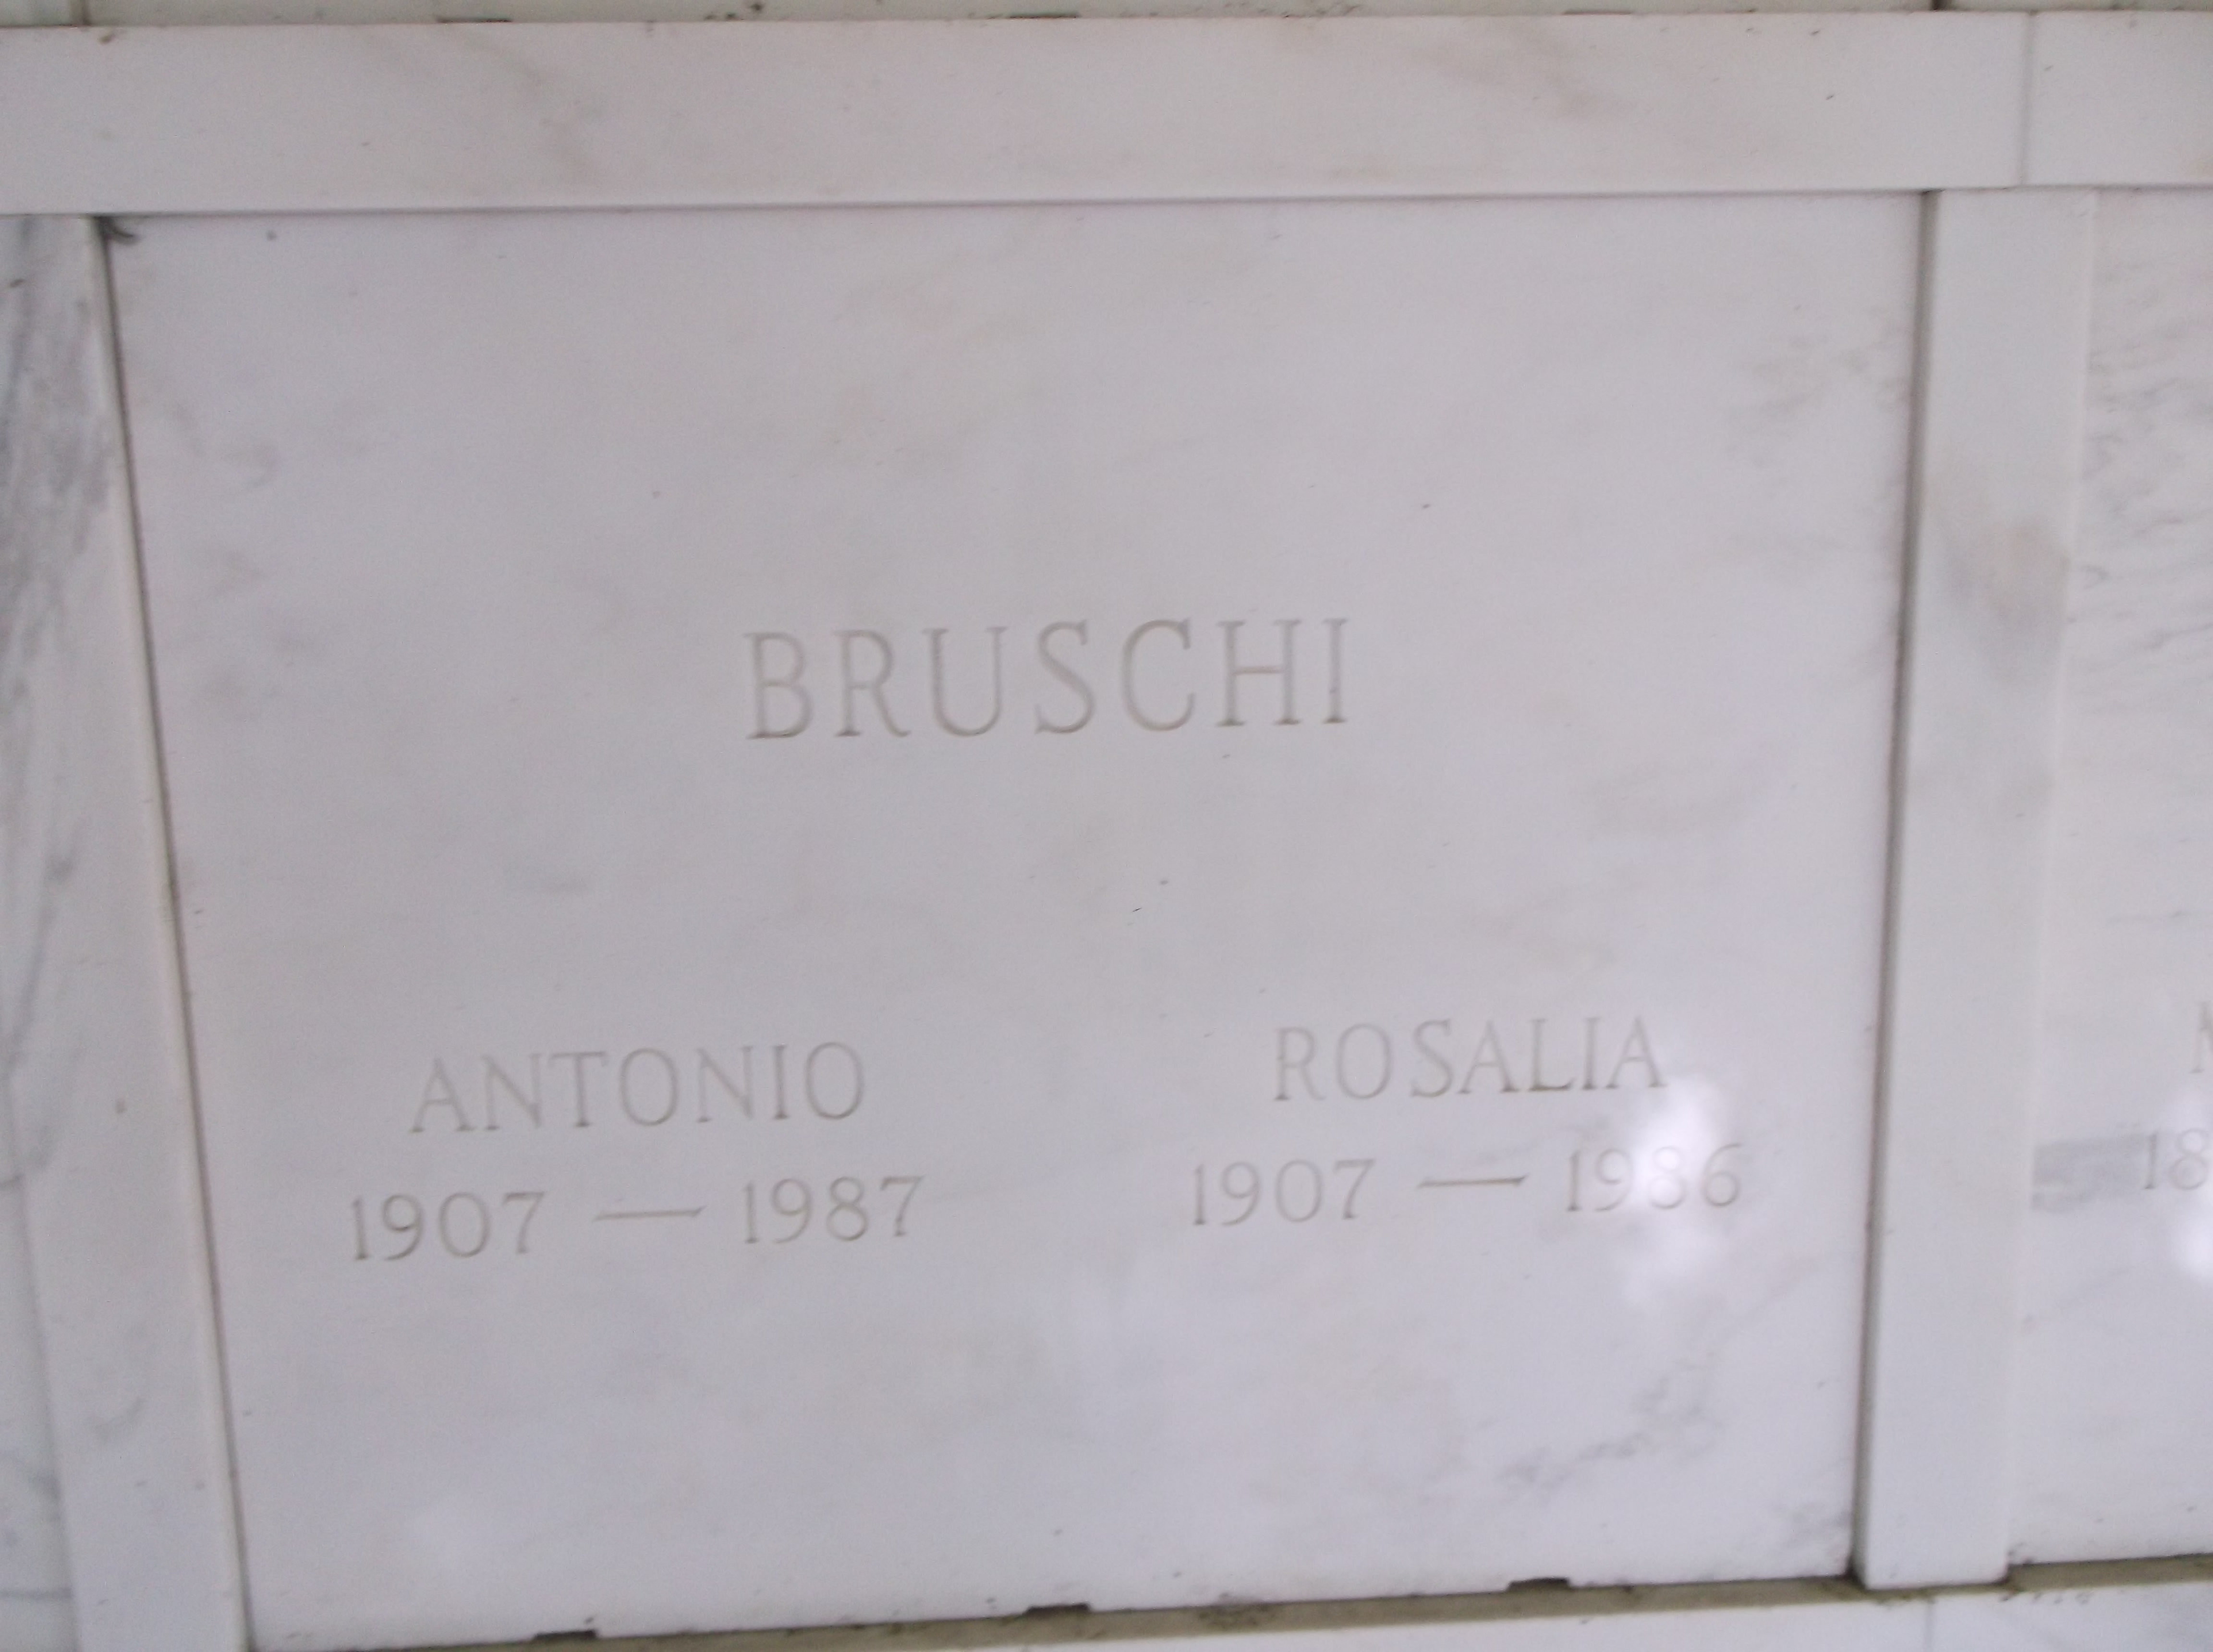 Antonio Bruschi